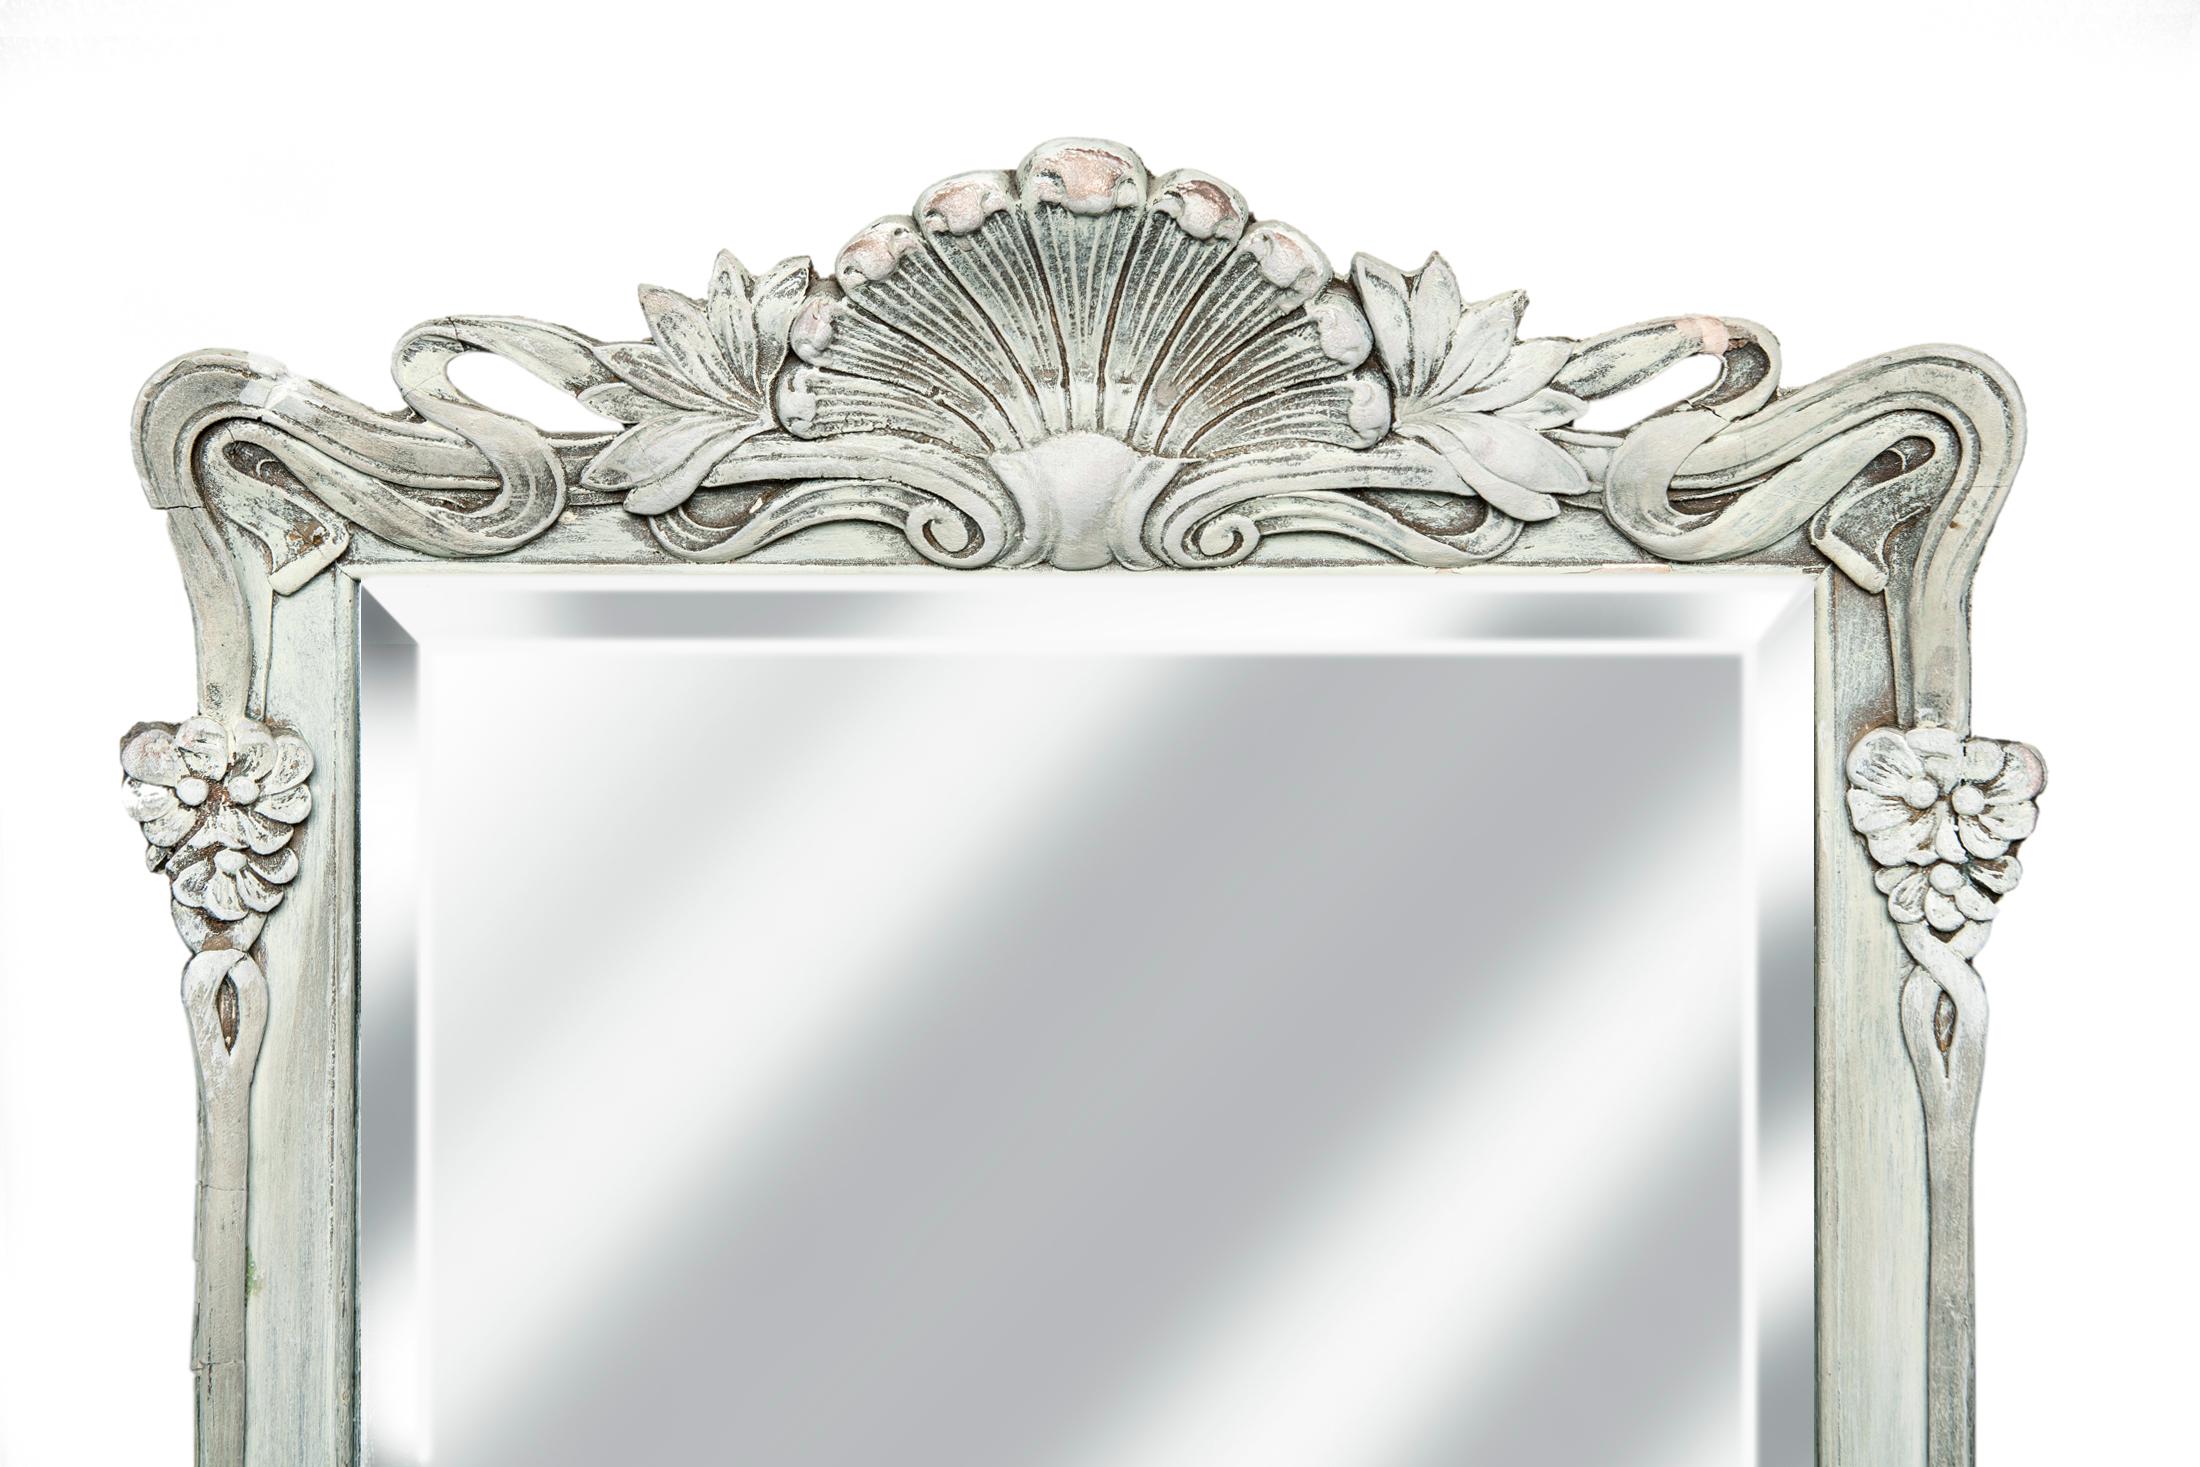 Cadre artisanal Art Nouveau / miroir finement biseauté. Rectangle allongé
miroir biseauté plus ancien. Le fil peut être suspendu avec l'écusson en haut ou en bas.